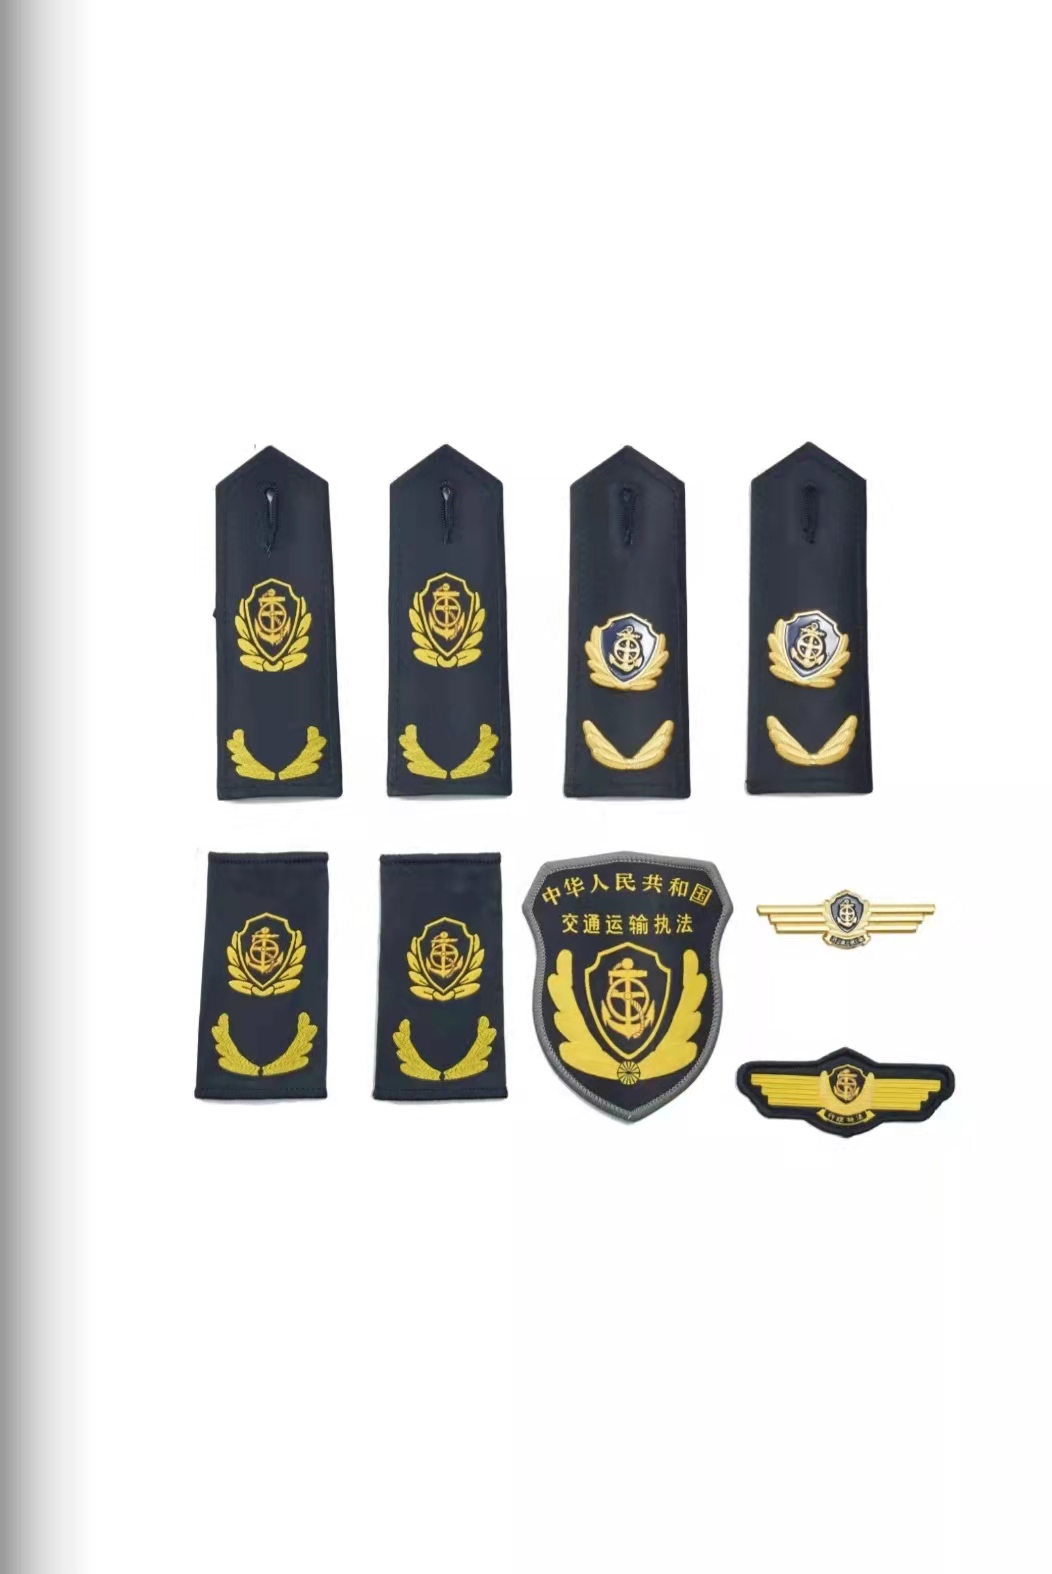 六部门统一交通运输执法服装标志